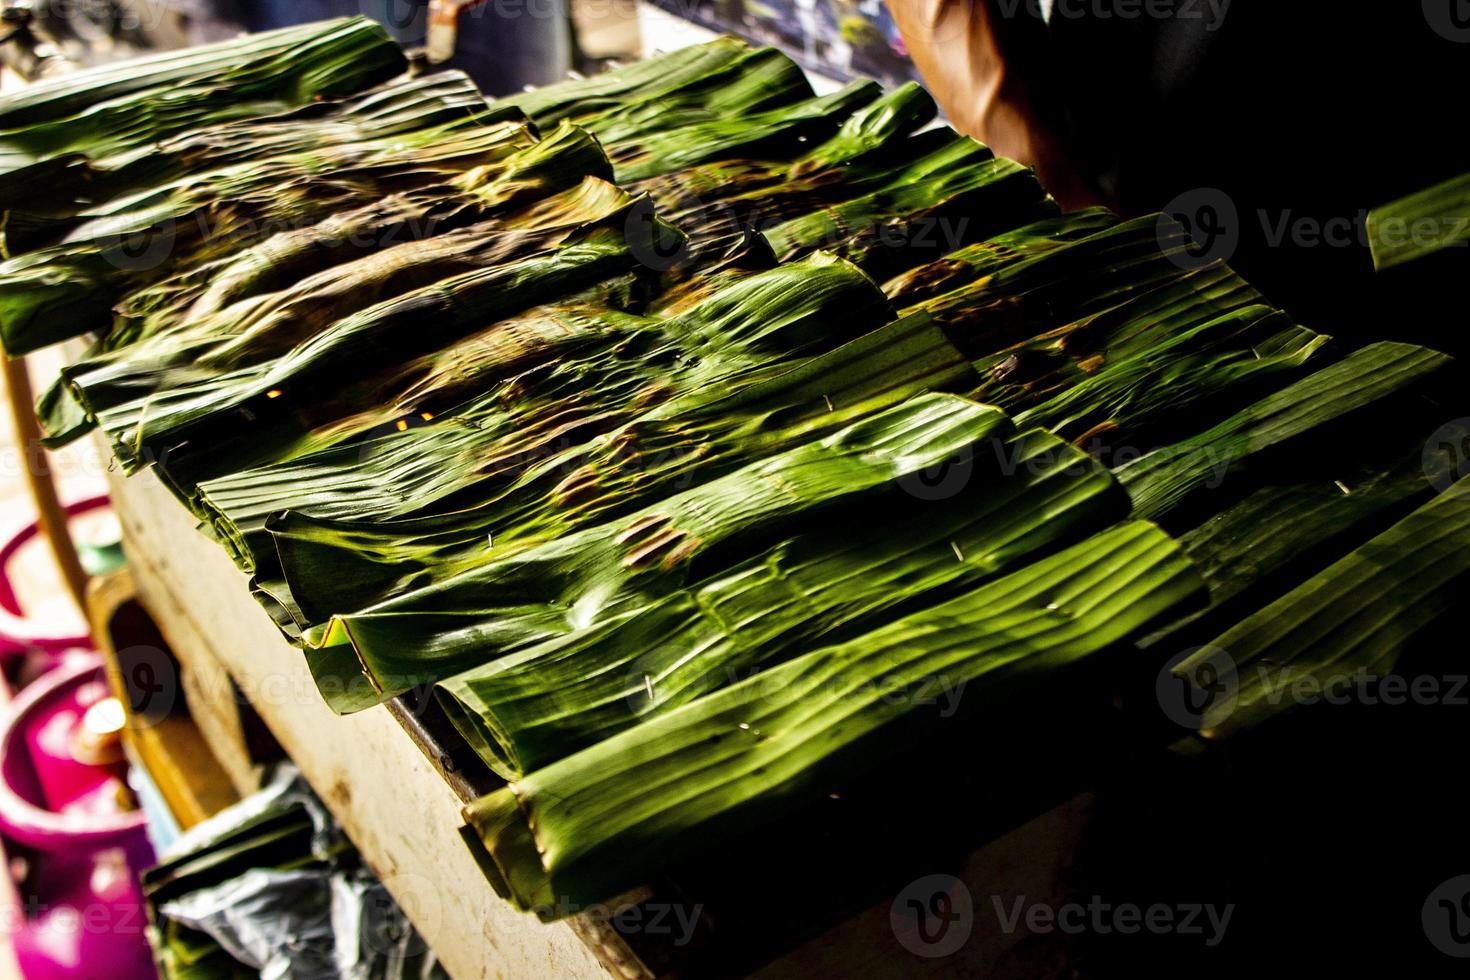 Otak - Otak ist ein Gericht aus gehacktem Makrelenfischfleisch, das in Bananenblätter gewickelt, gebacken und mit scharfer und saurer Soße serviert wird. Otak-Otak ist ein traditioneller Fischkuchen aus Indonesien foto